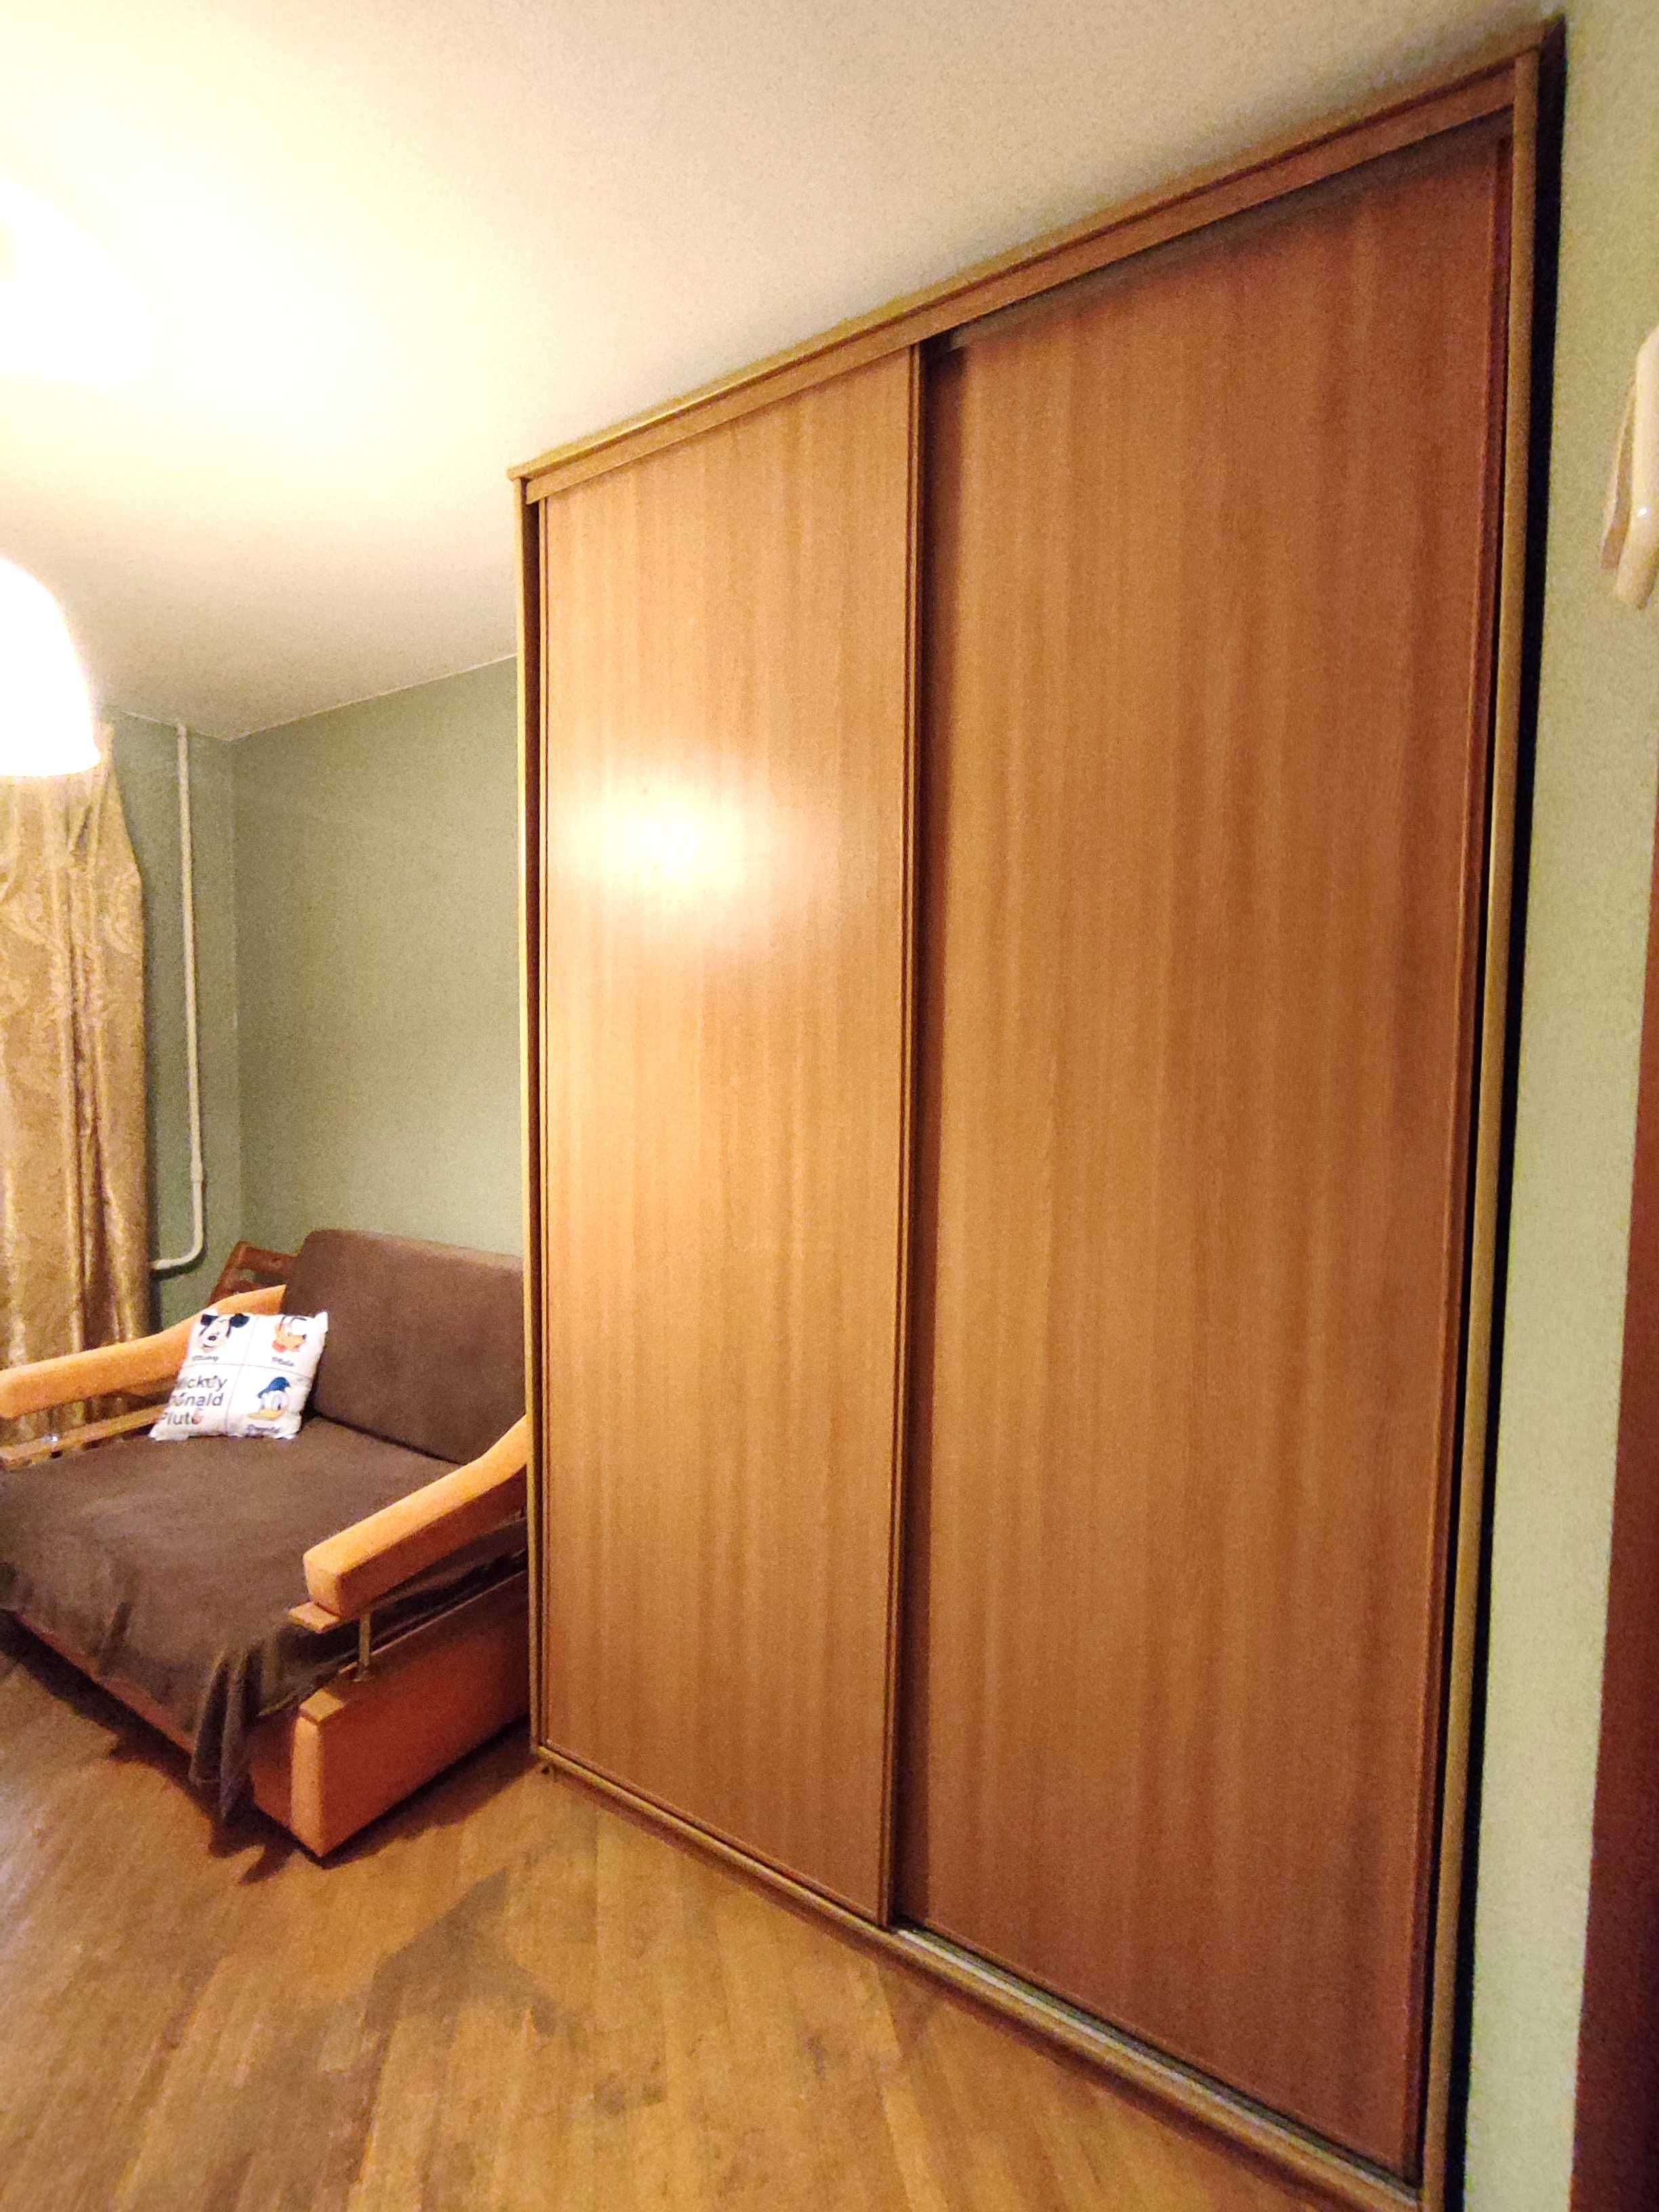 2 Кімнатна 55 квартира в Оболонському районі.